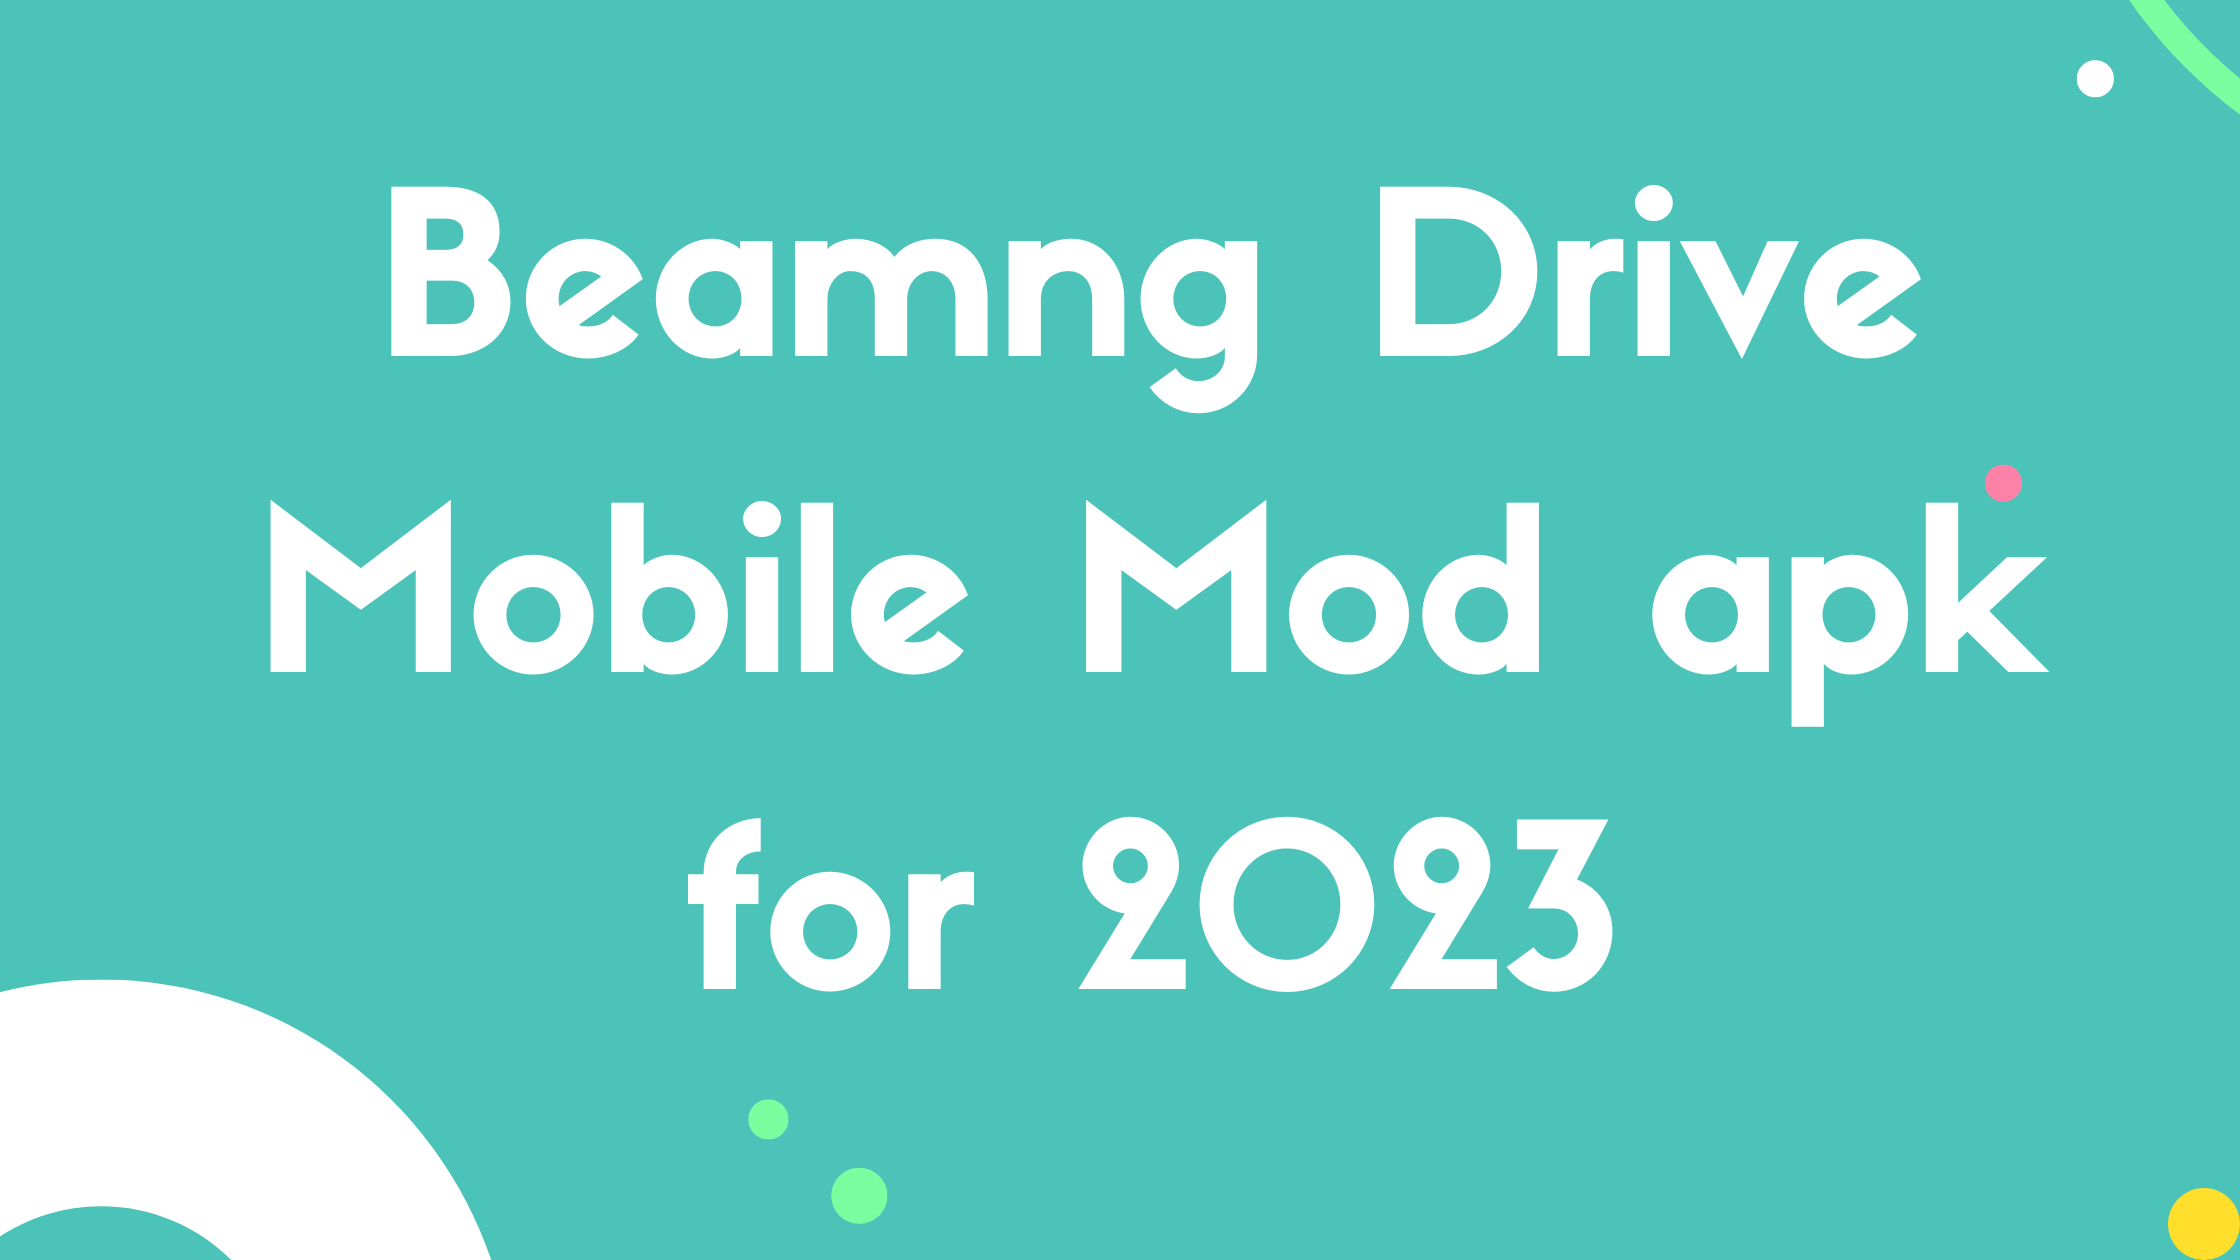 Beamng Drive Mobile Mod apk for 2023